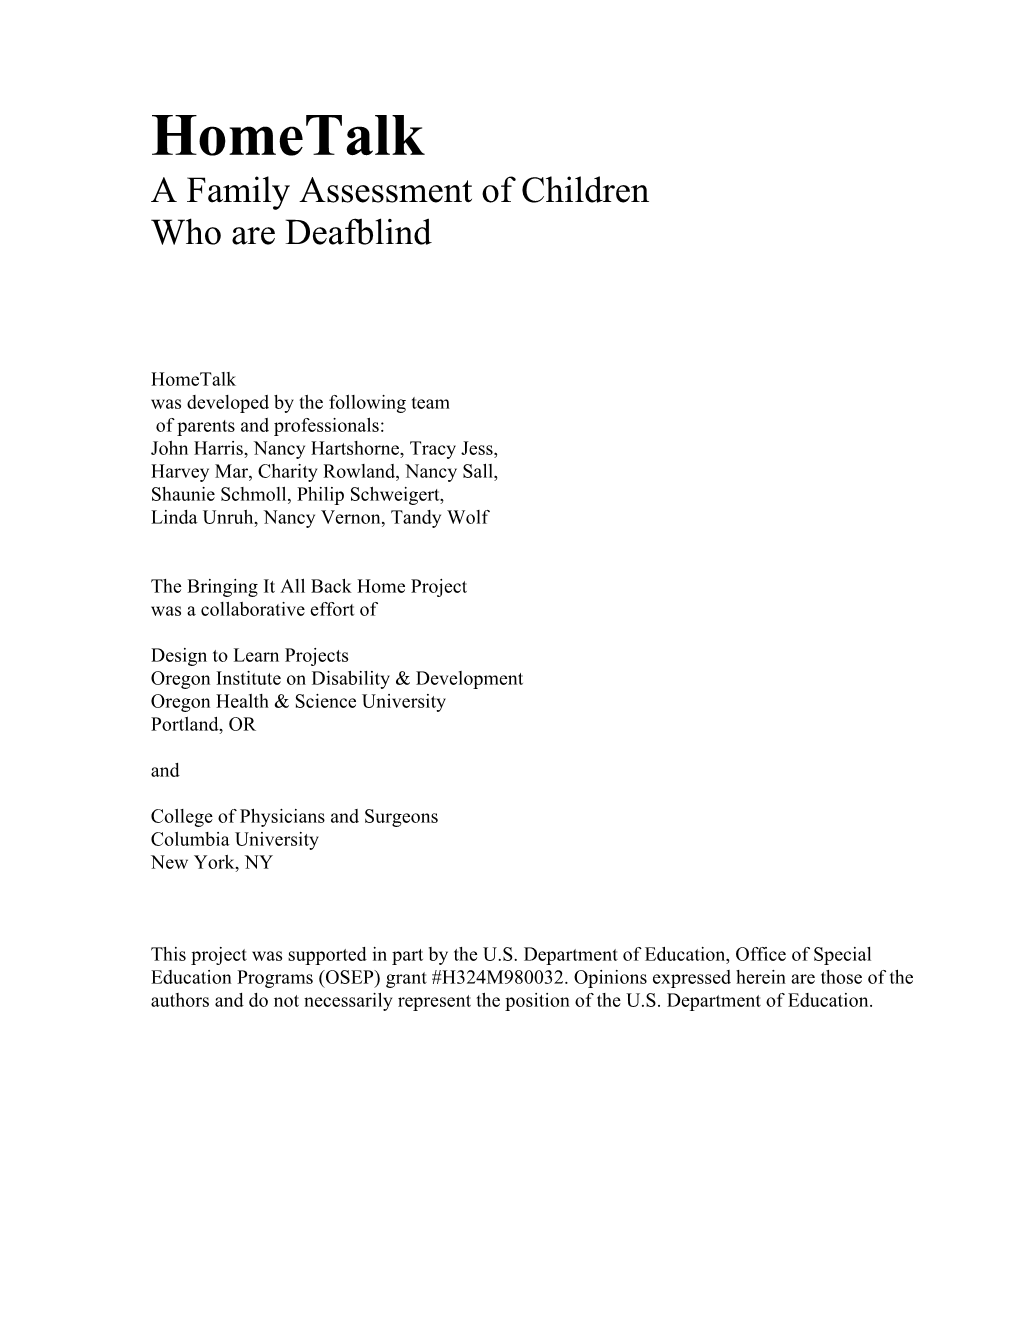 A Family Assessment of Children